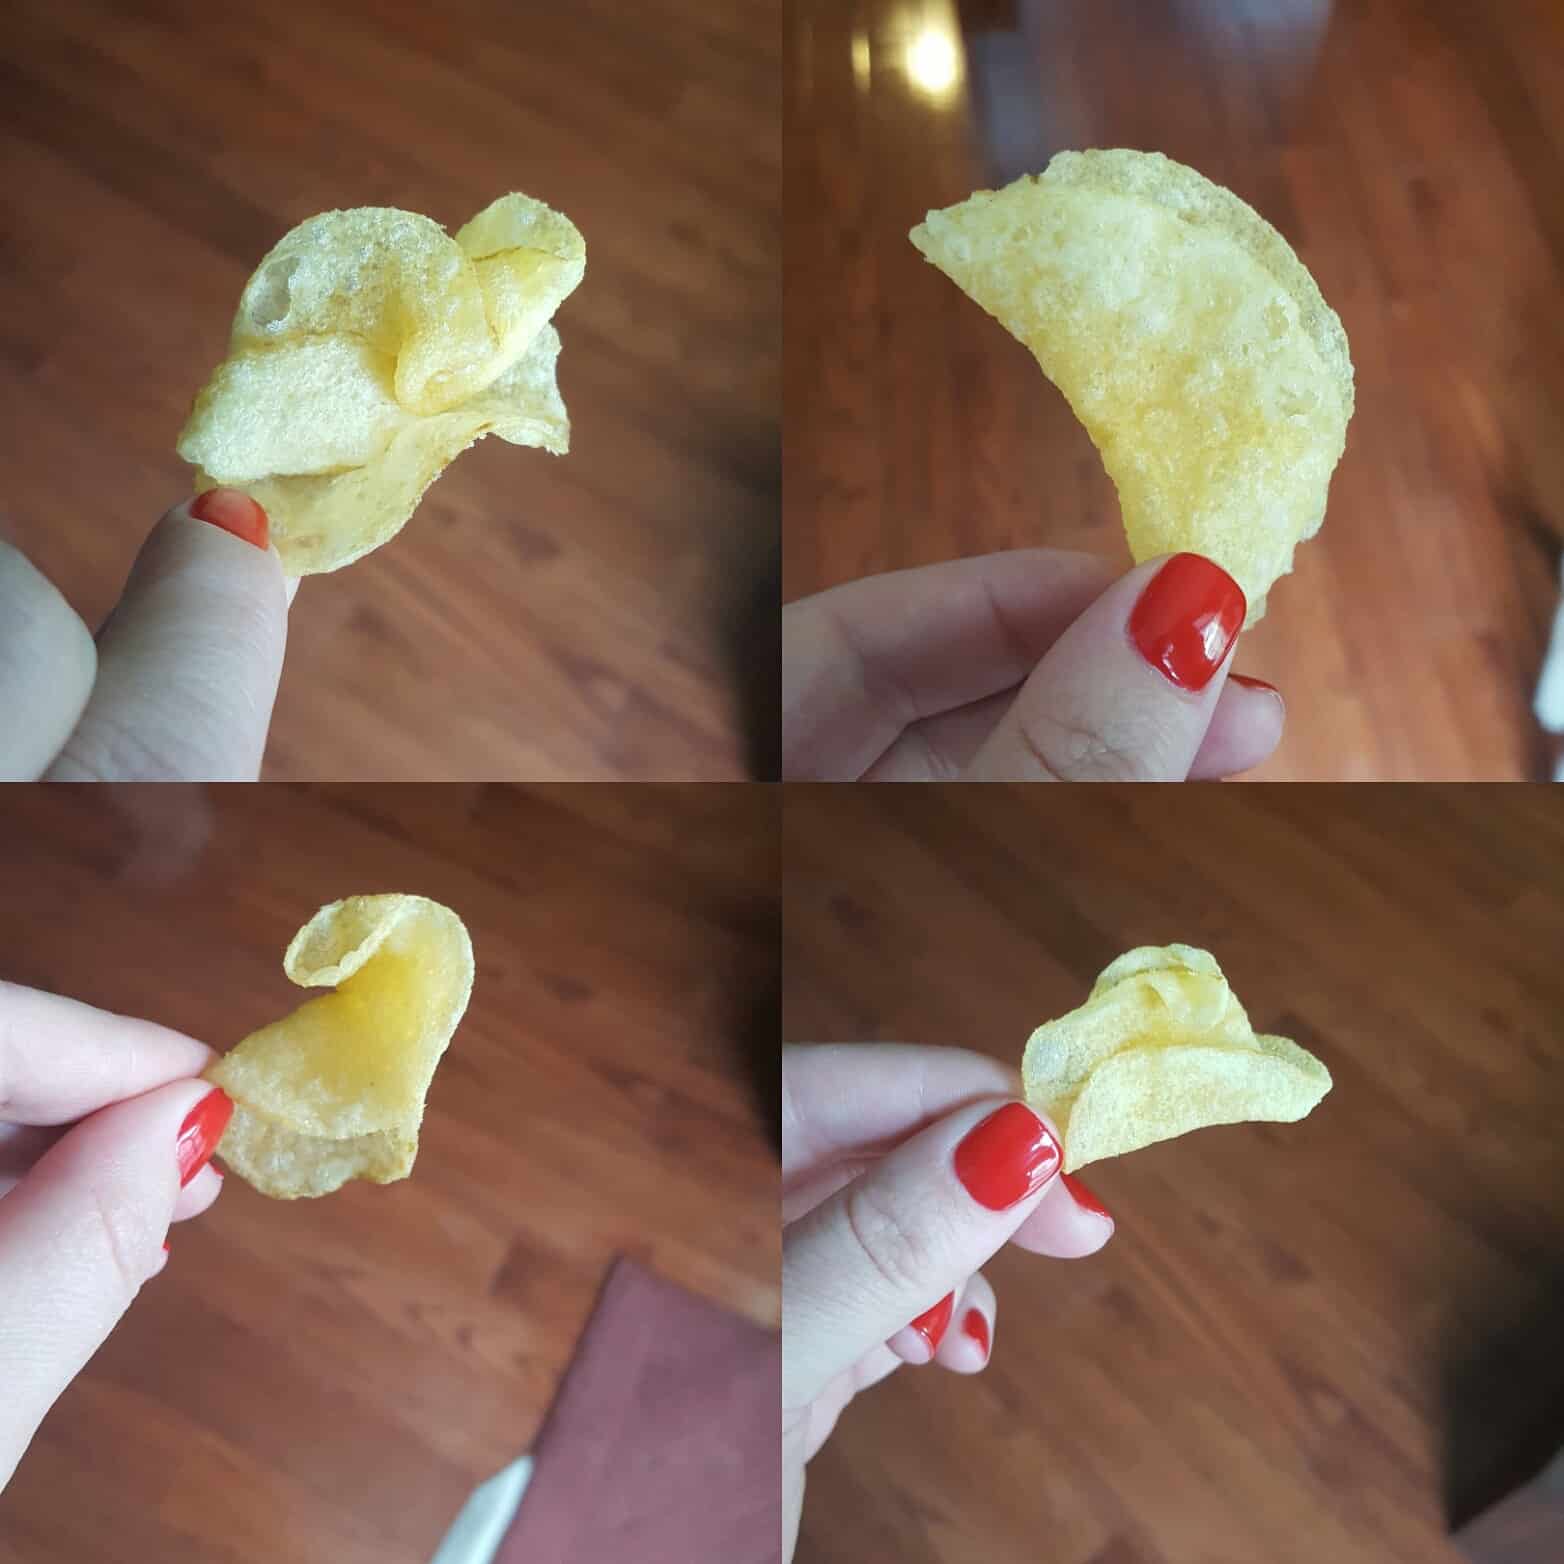 Folded potato chips 